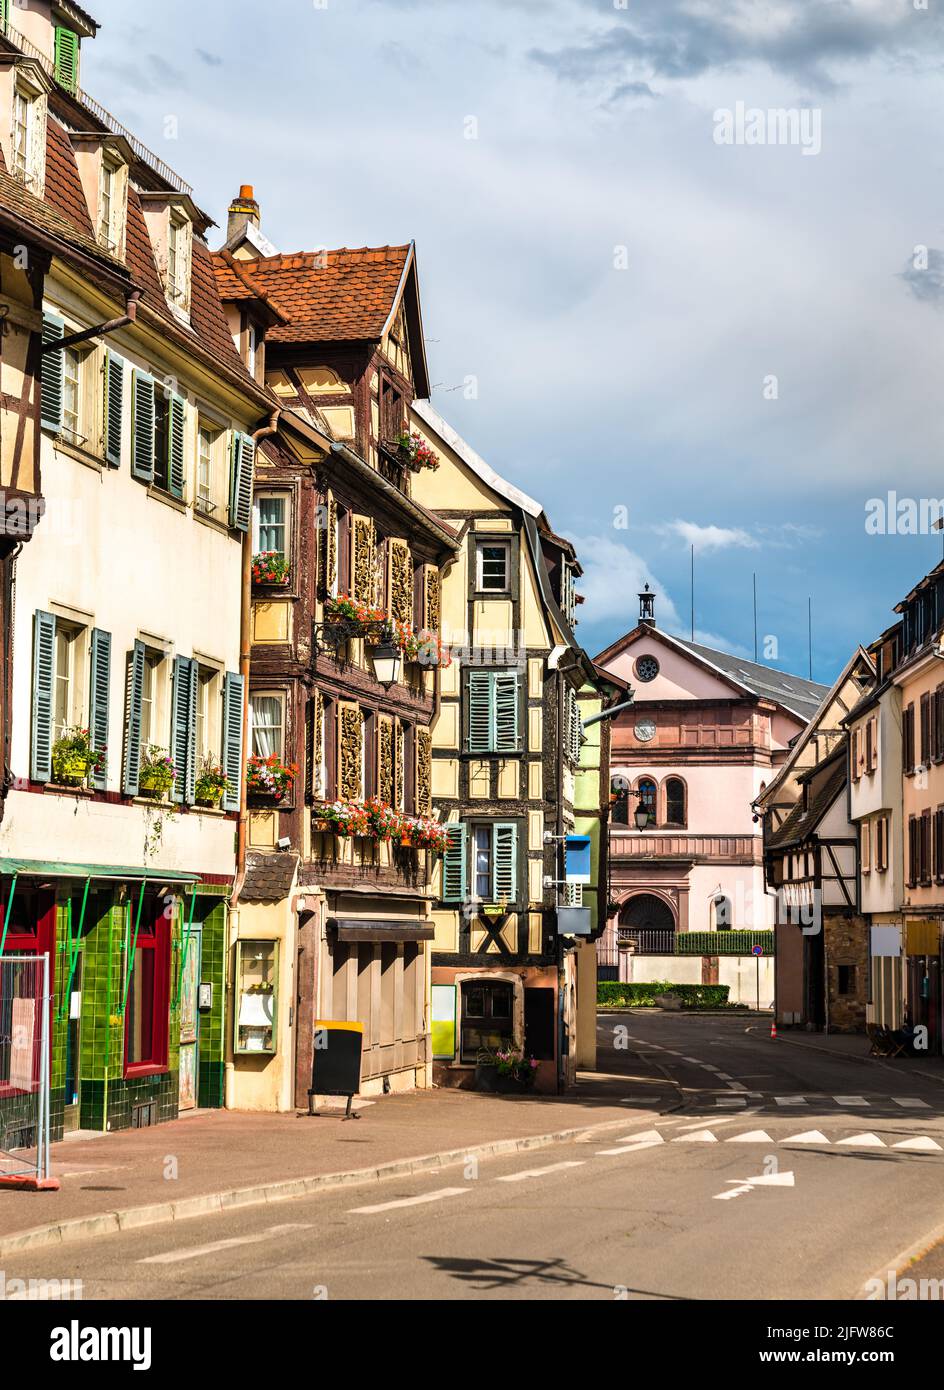 Casas tradicionales de entramado de madera en Colmar - Alsacia, Francia Foto de stock